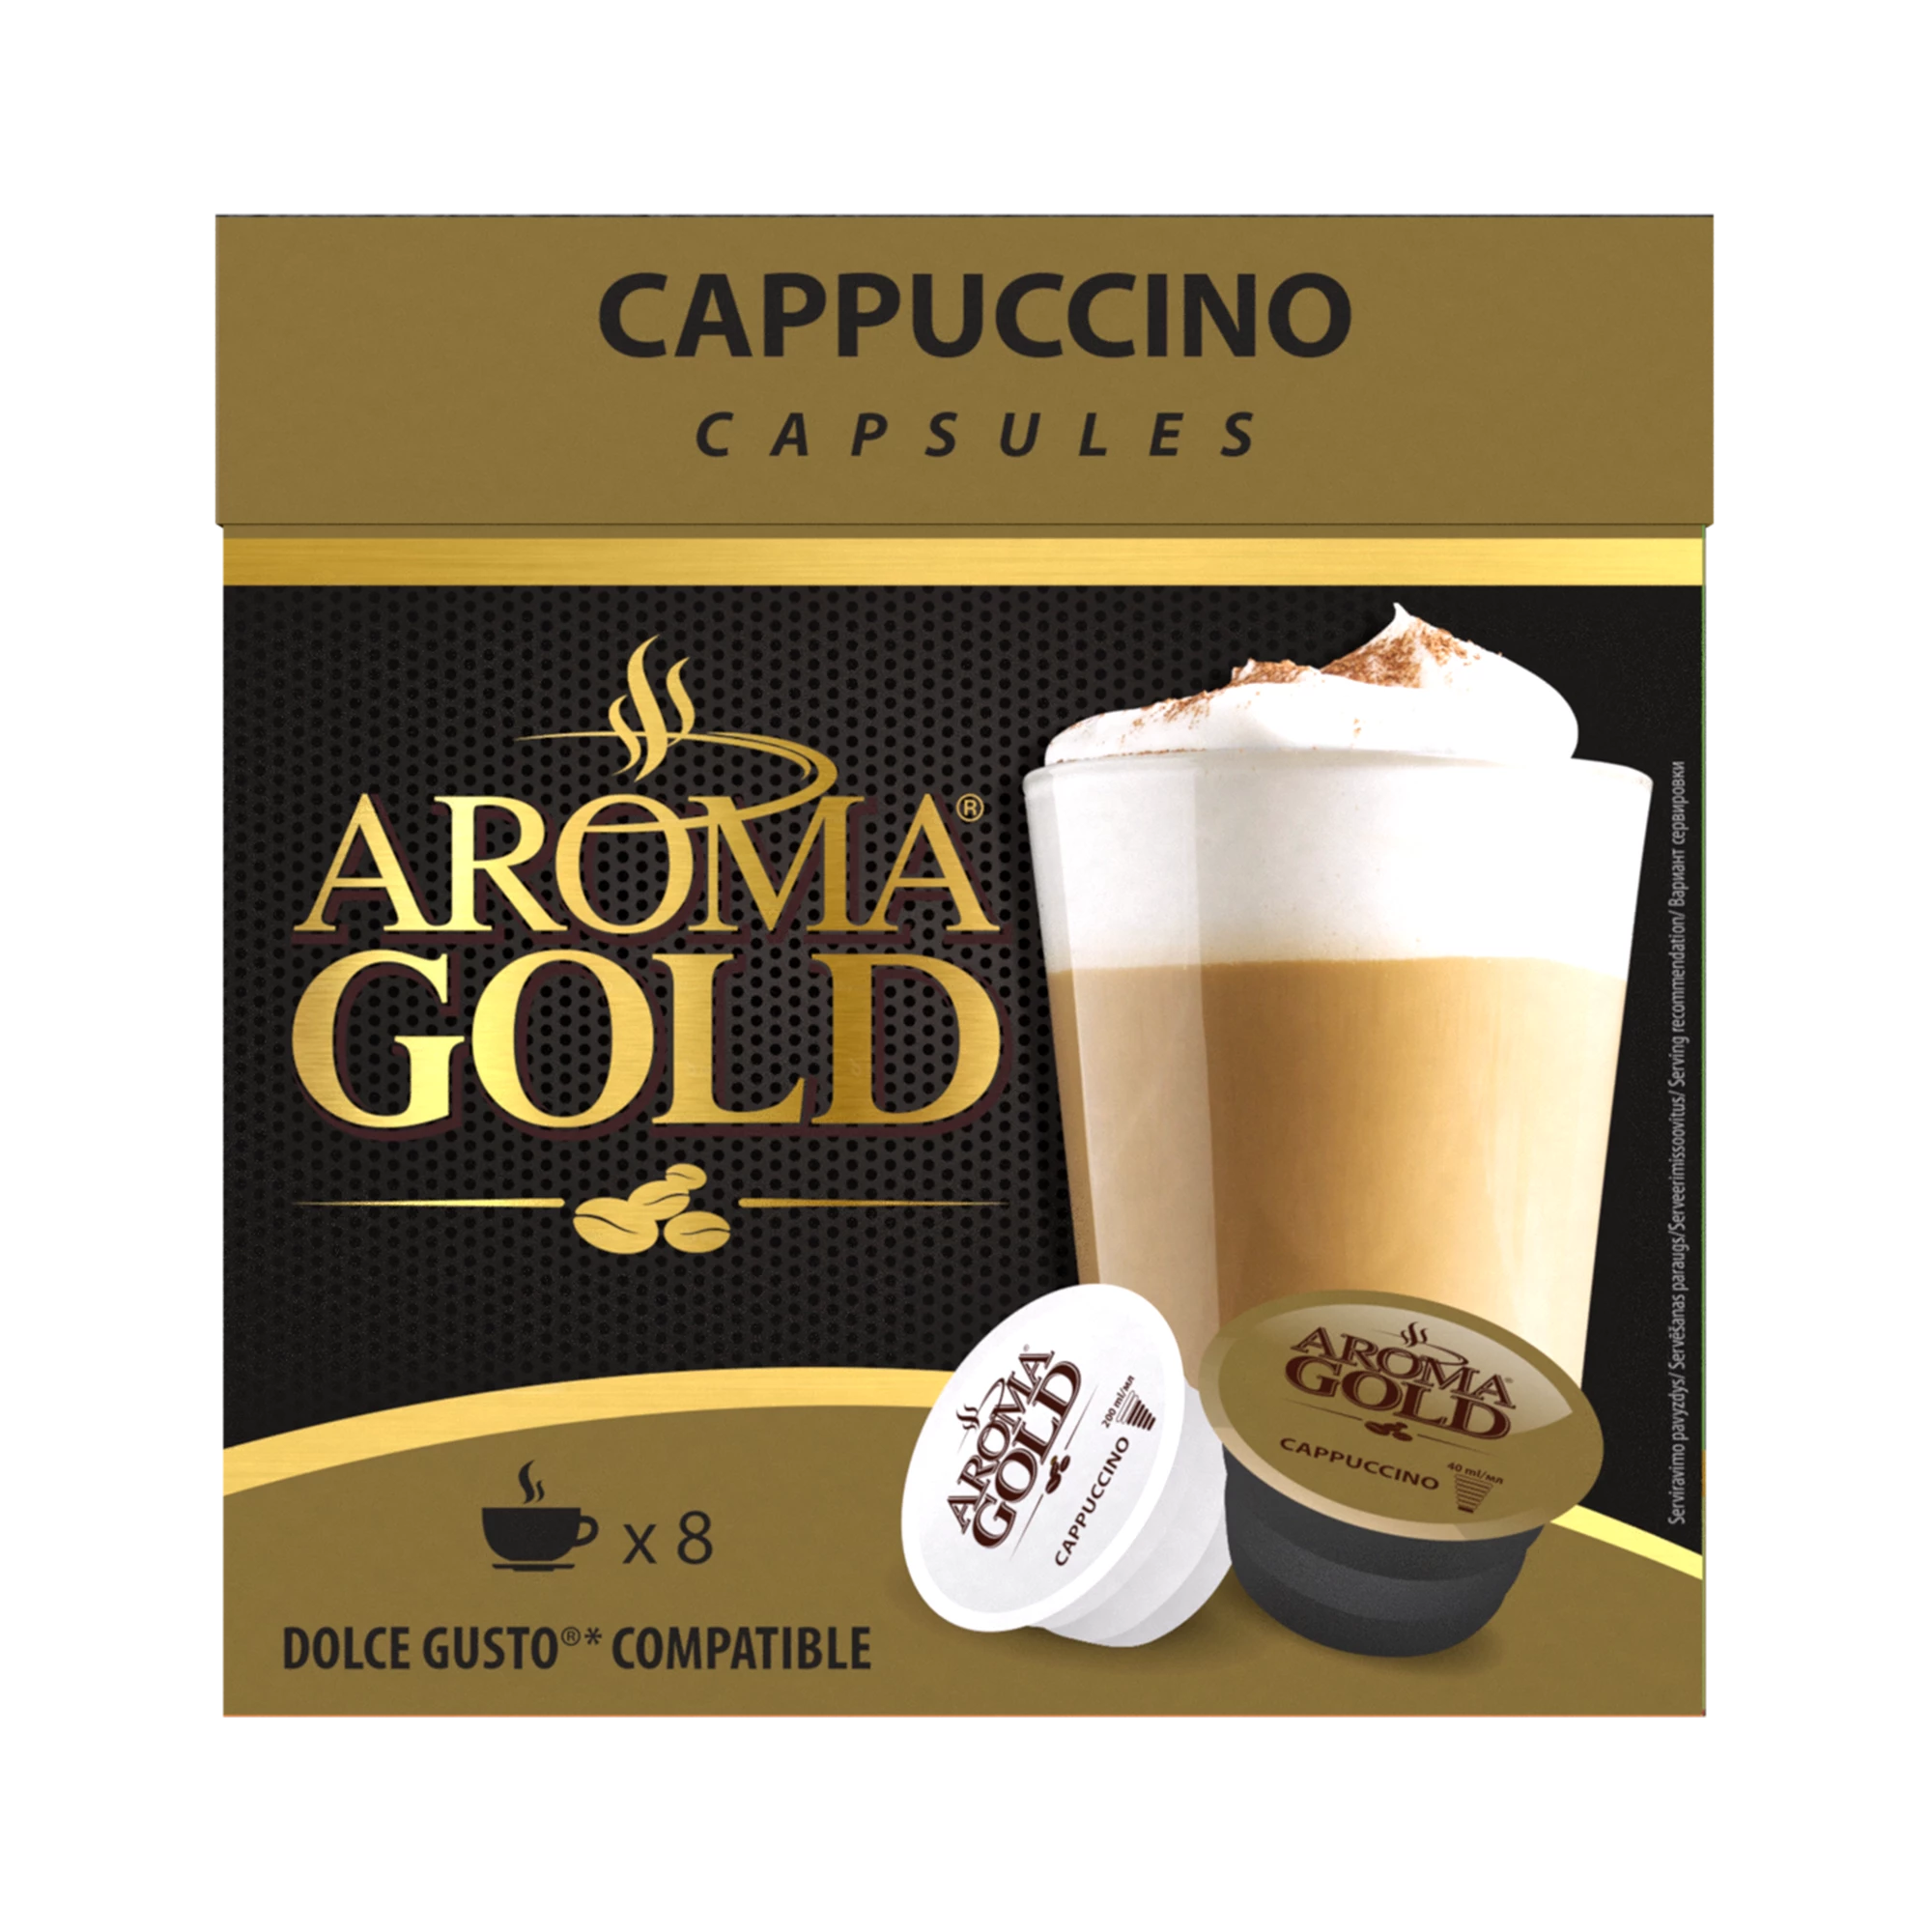 قهوة كابتشينو متوافقة مع دولتشي قوستو اكس (8 + 8) - رائحة ذهبية